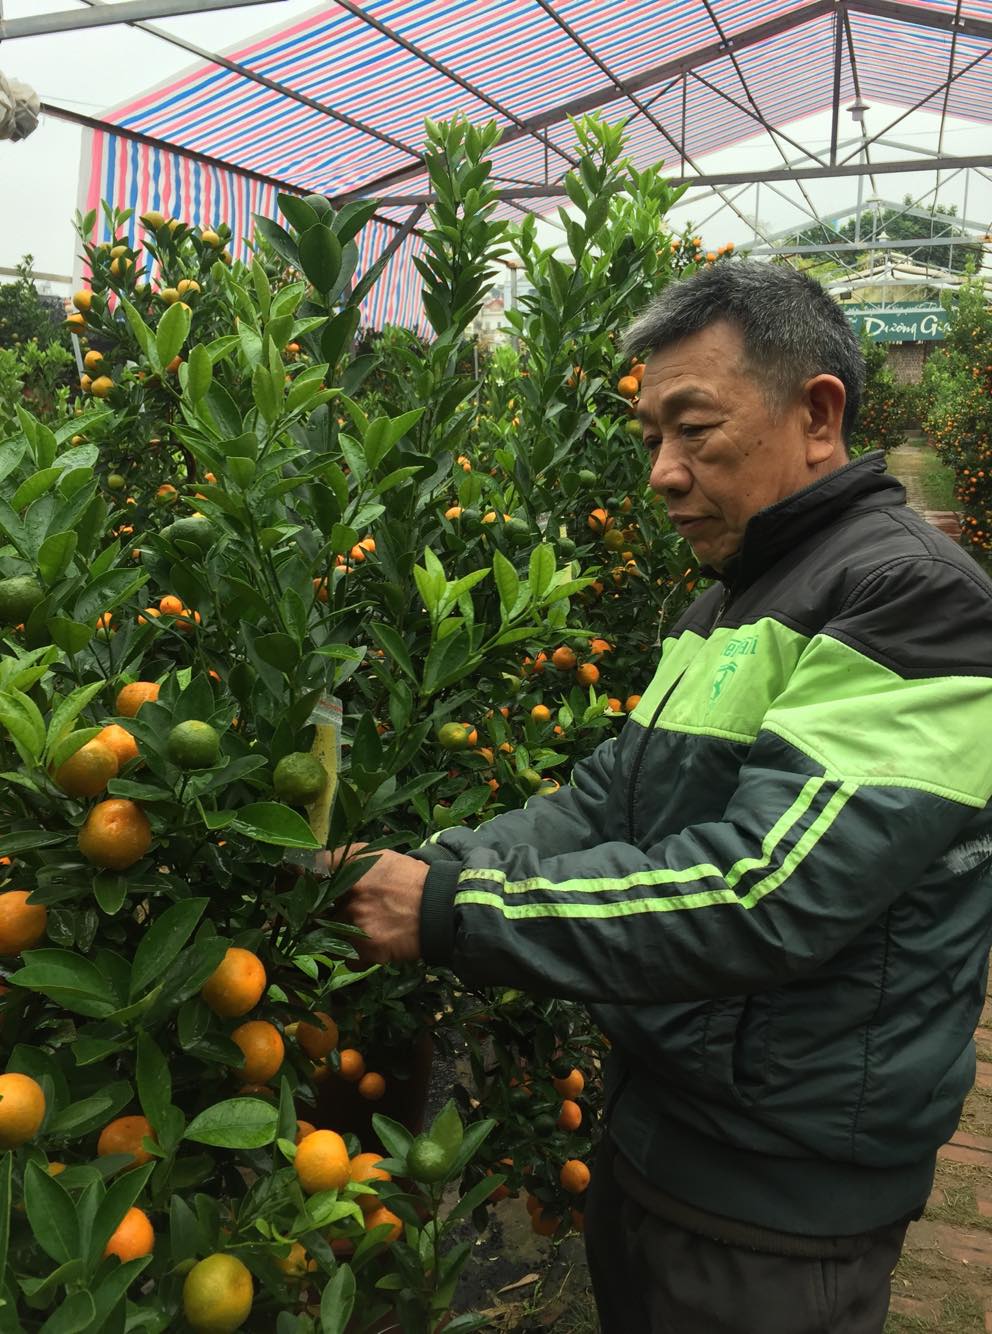 Tết Kỷ Hợi 2019: Gặp nghệ nhân trồng quất bonsai tại làng Tứ Liên - Hà Nội